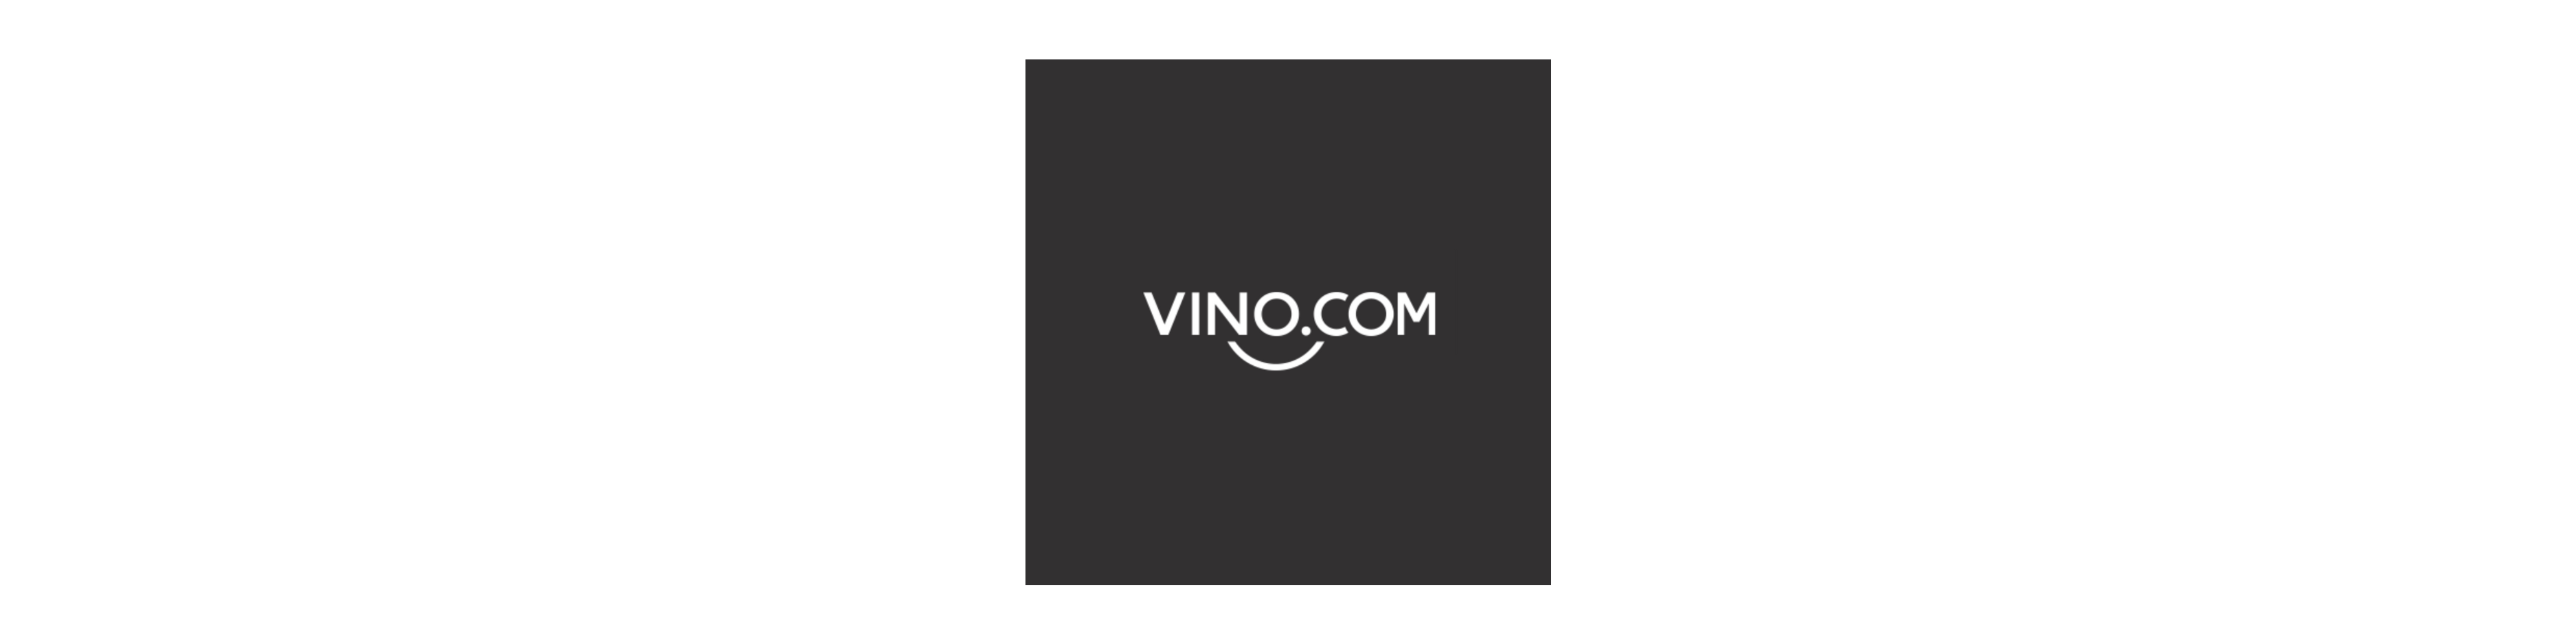 Vino.com (In promozione)